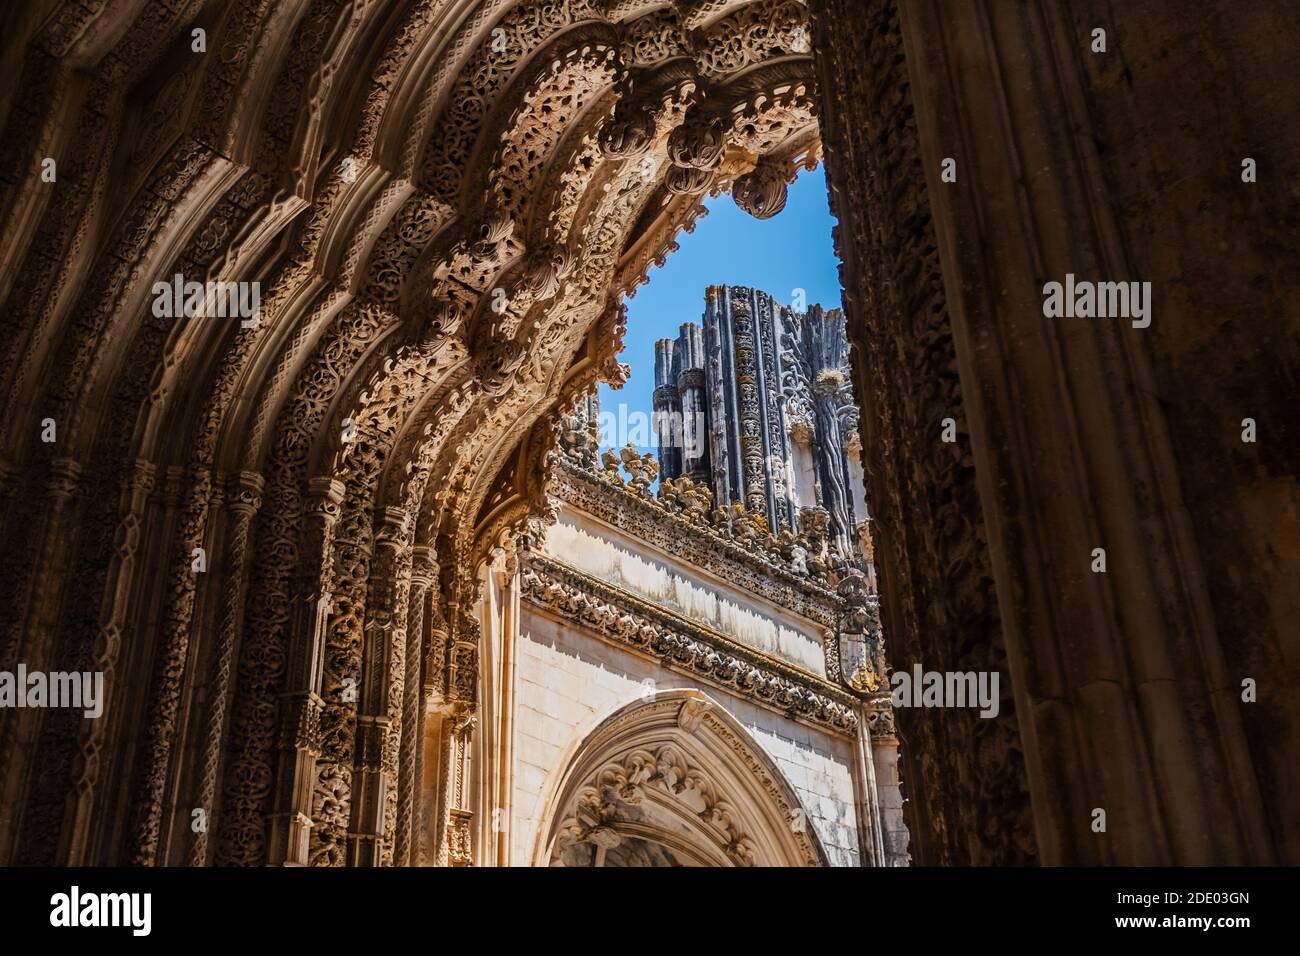 Batalha Kloster (Portugal), die unvollständigen Kapellen: Detailansicht des Ehrfurcht Eingangsportals, etwa fünfzehn Meter hoch und vollständig geschnitzt. Stockfoto